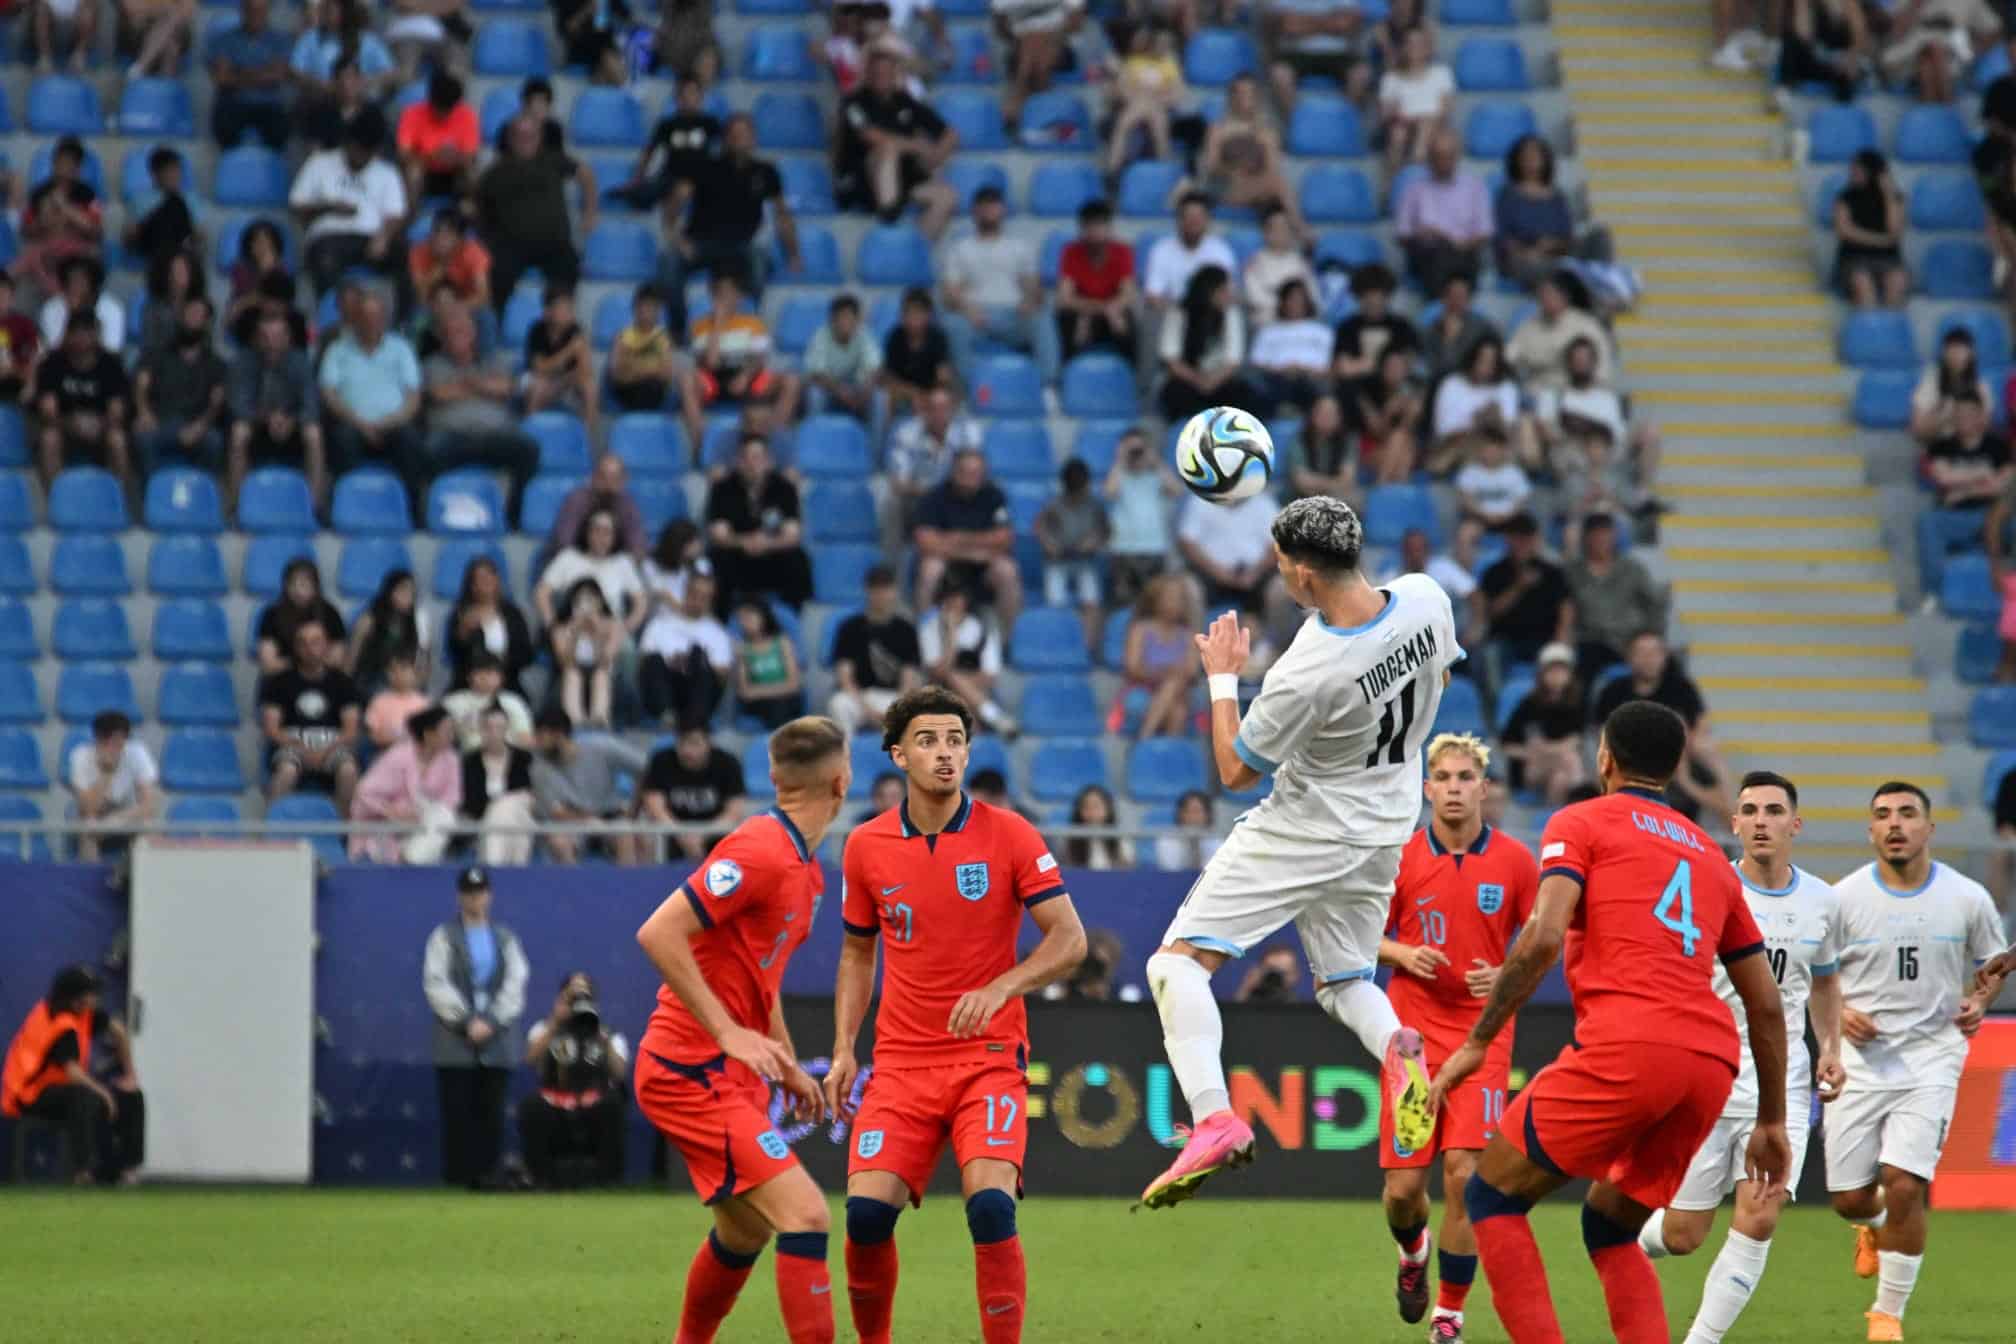 Cursa Israelului la Campionatul European UEFA Under-21 s-a încheiat cu o înfrângere cu 3-0 în semifinale în fața Angliei.